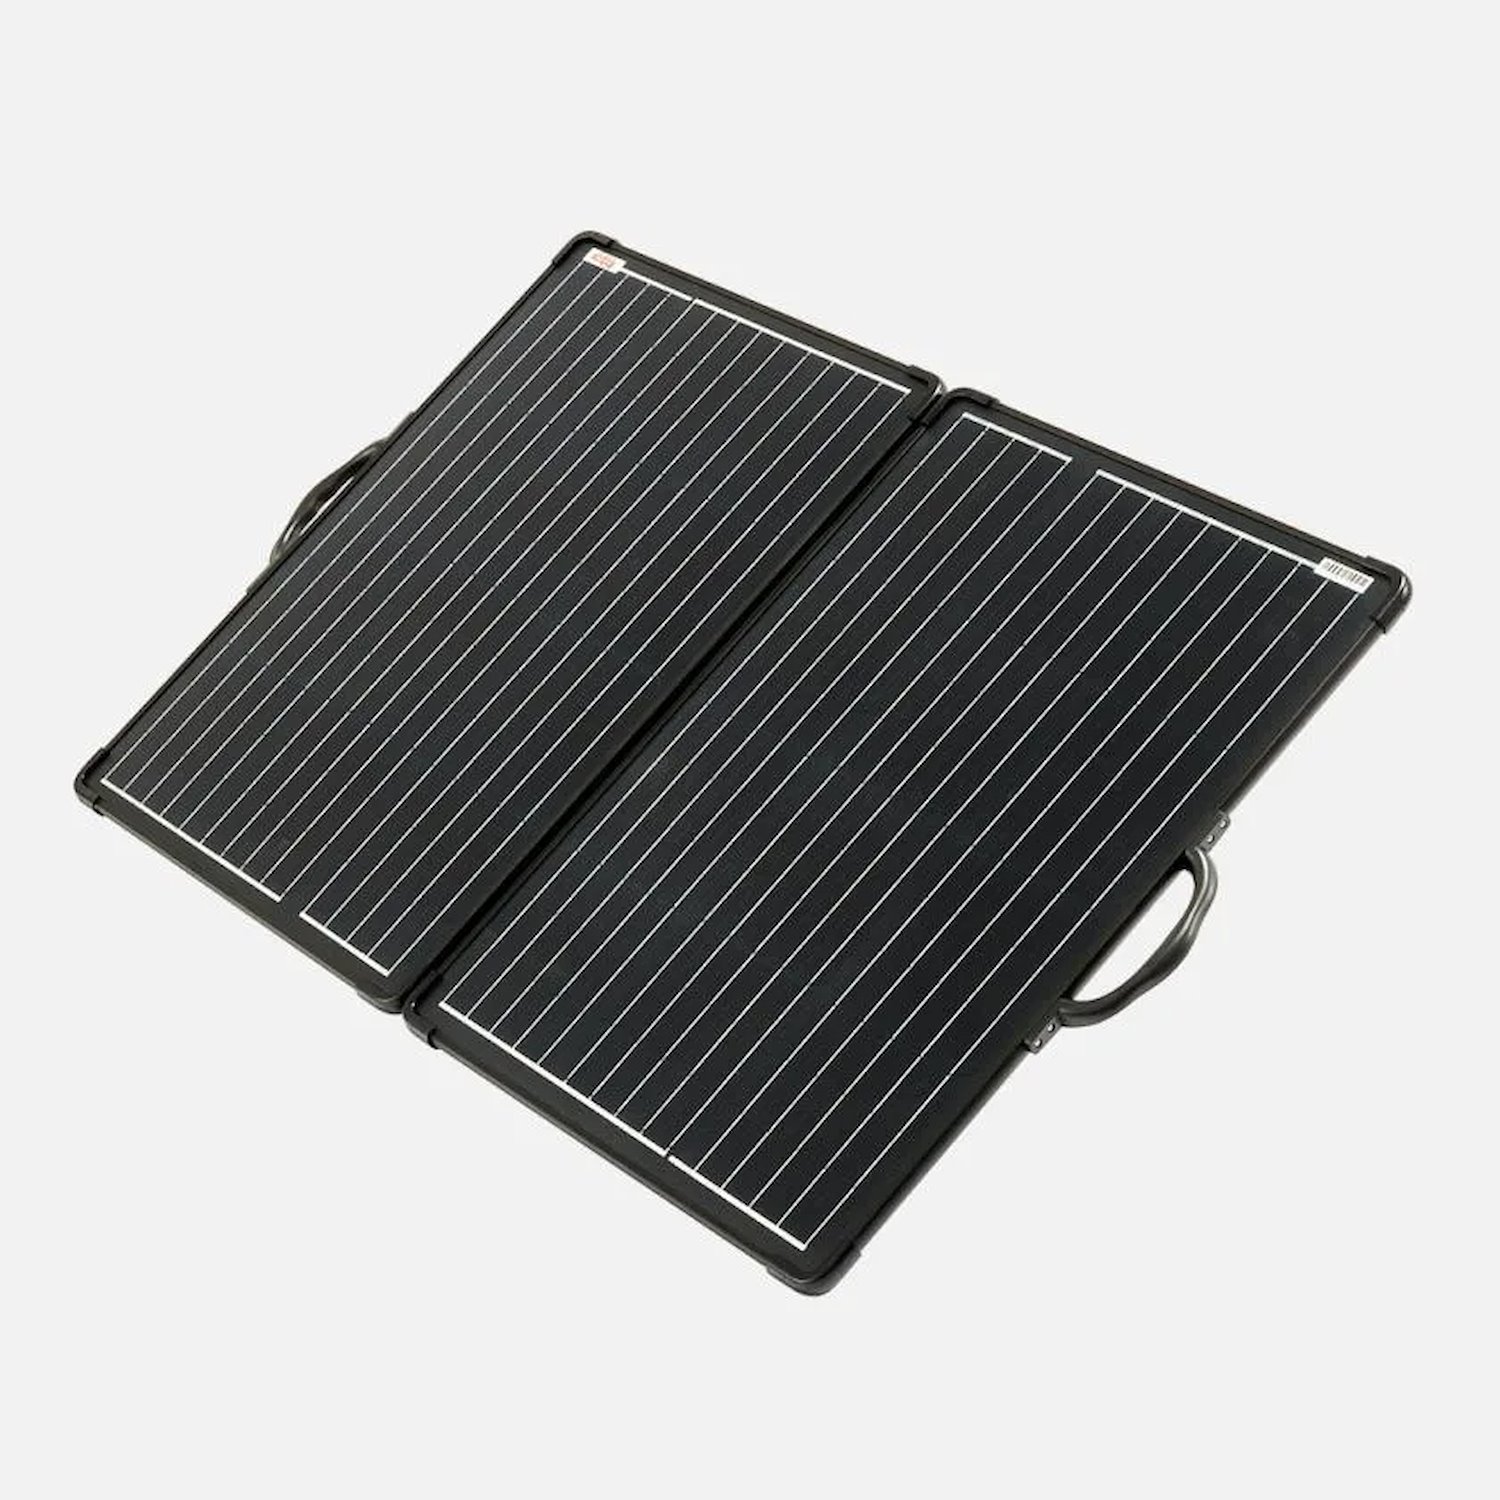 SPFP1120 120 Watt Folding Solar Panel